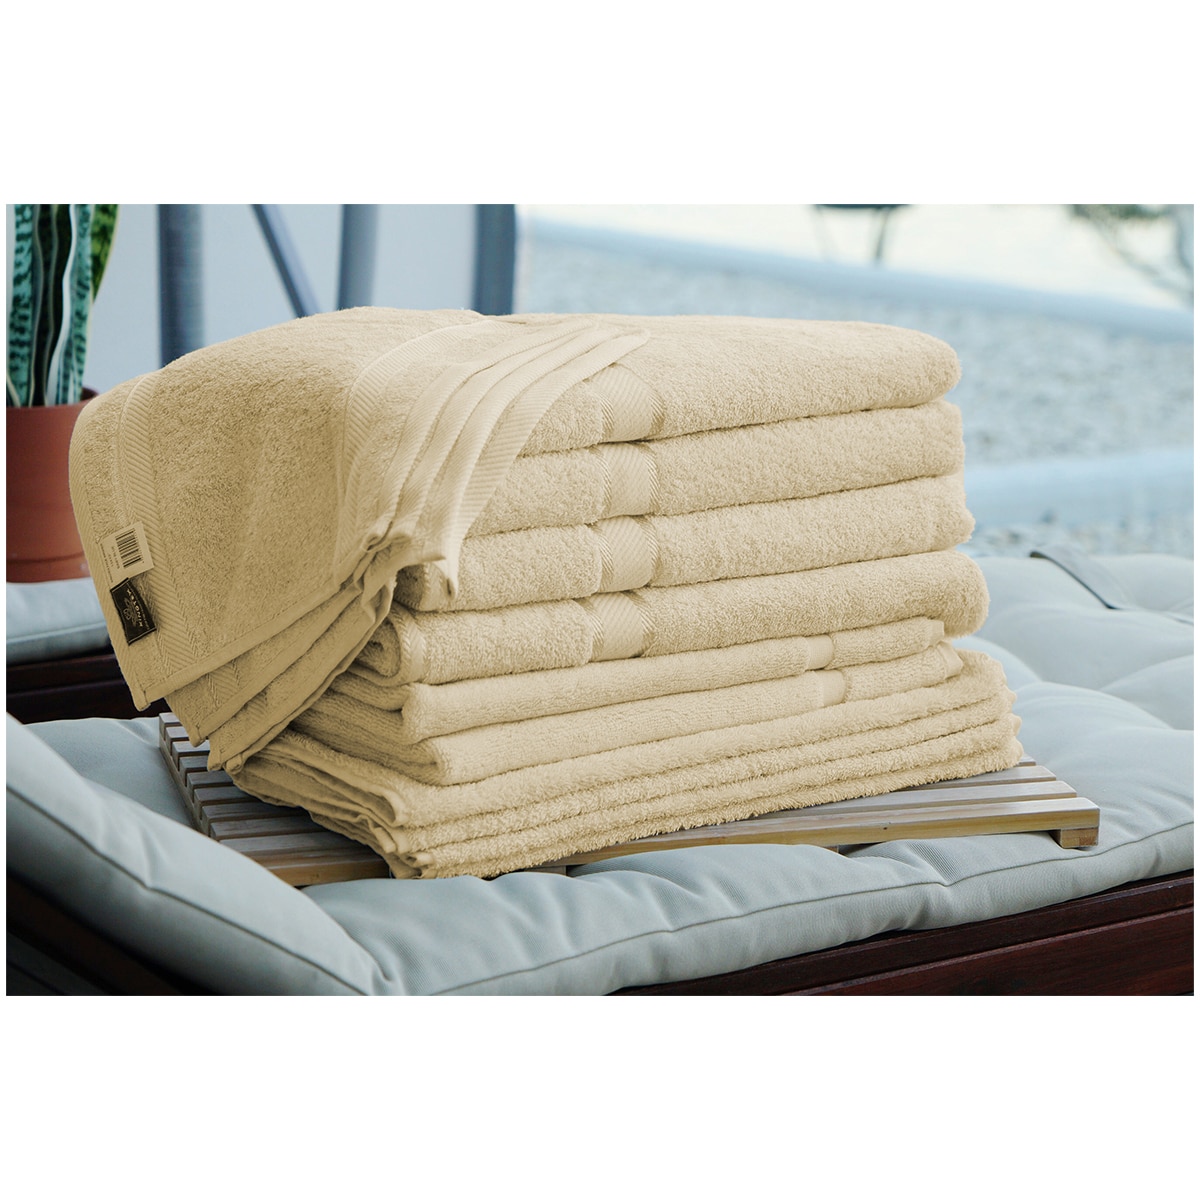 Kingtex Plain dyed 100% Combed Cotton towel range 550gsm Bath Sheet set 14 piece - linen